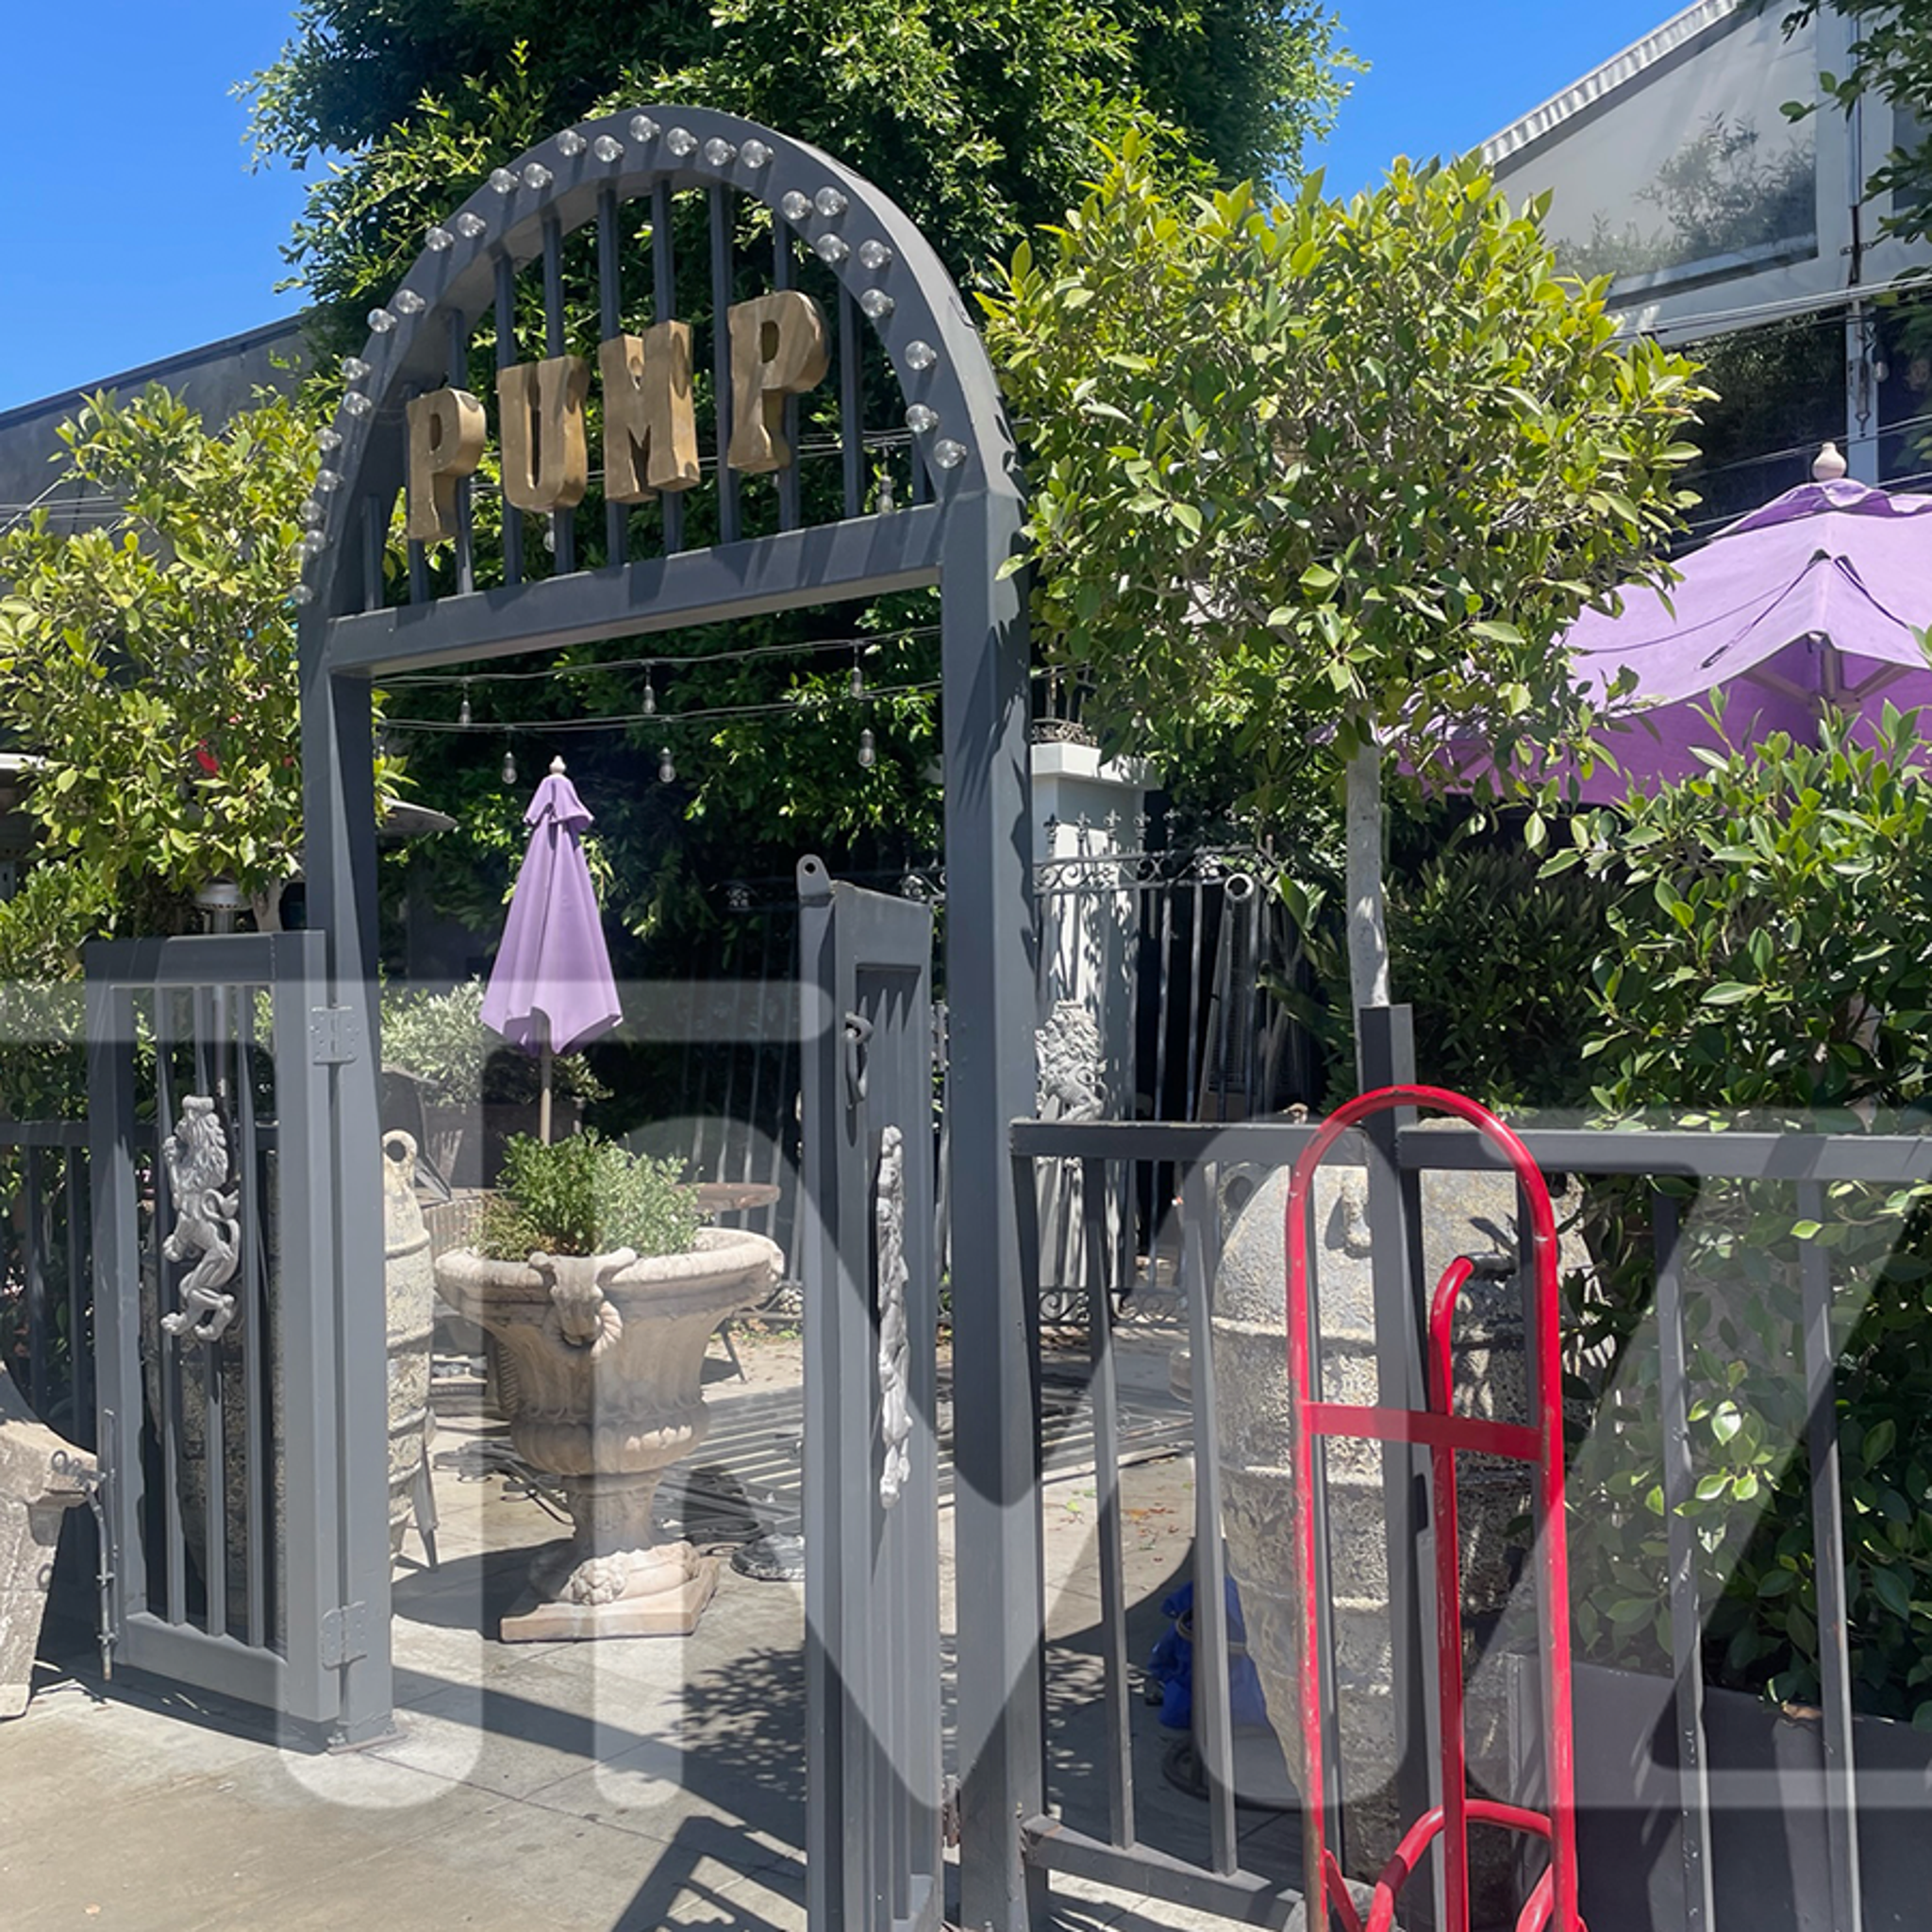 Lisa Vanderpump's L.A. Restaurant Pump Is Closing Down 'After 10